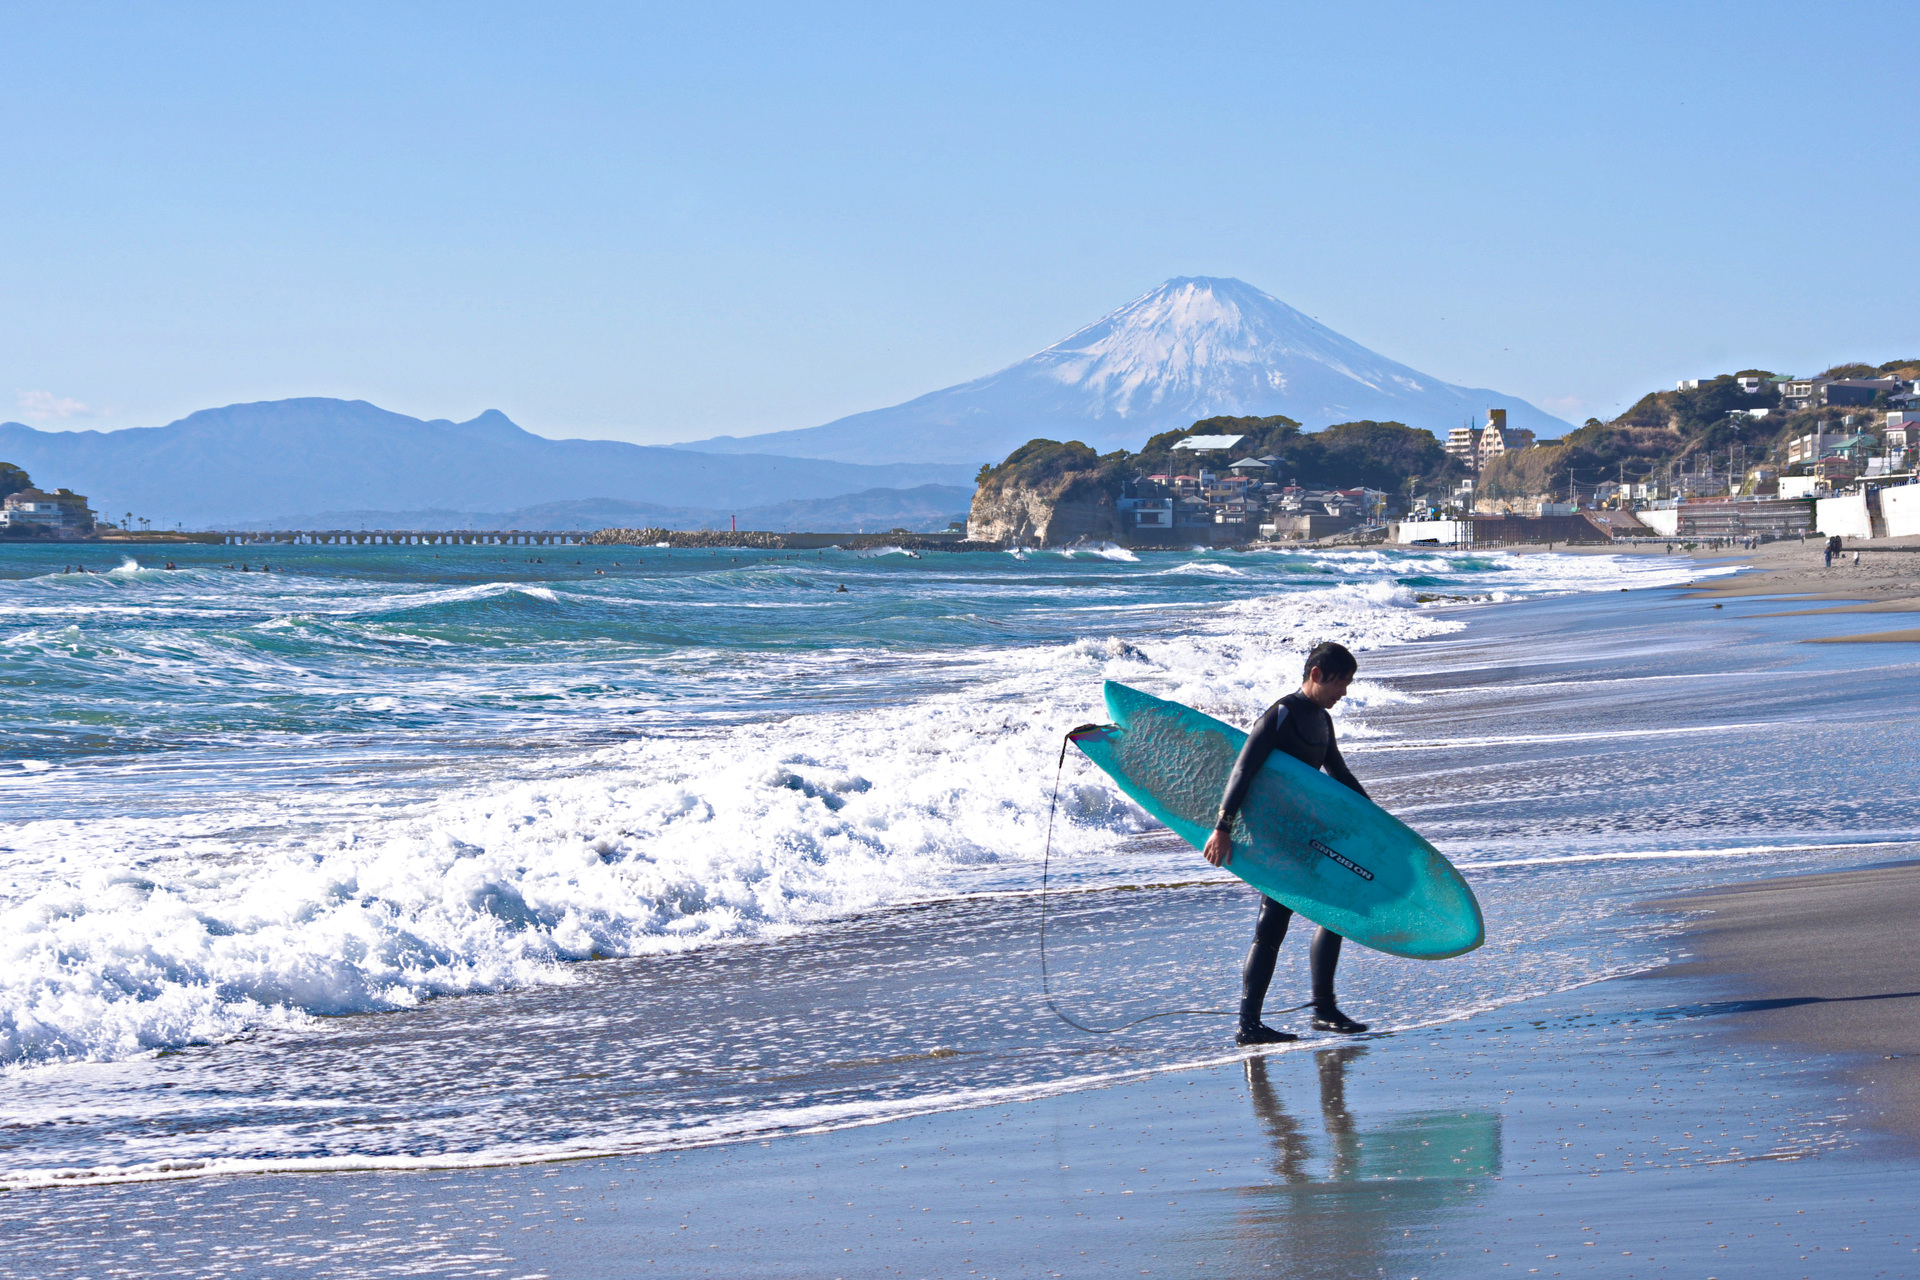 日本の風景 サーフィン日和 壁紙19x1280 壁紙館